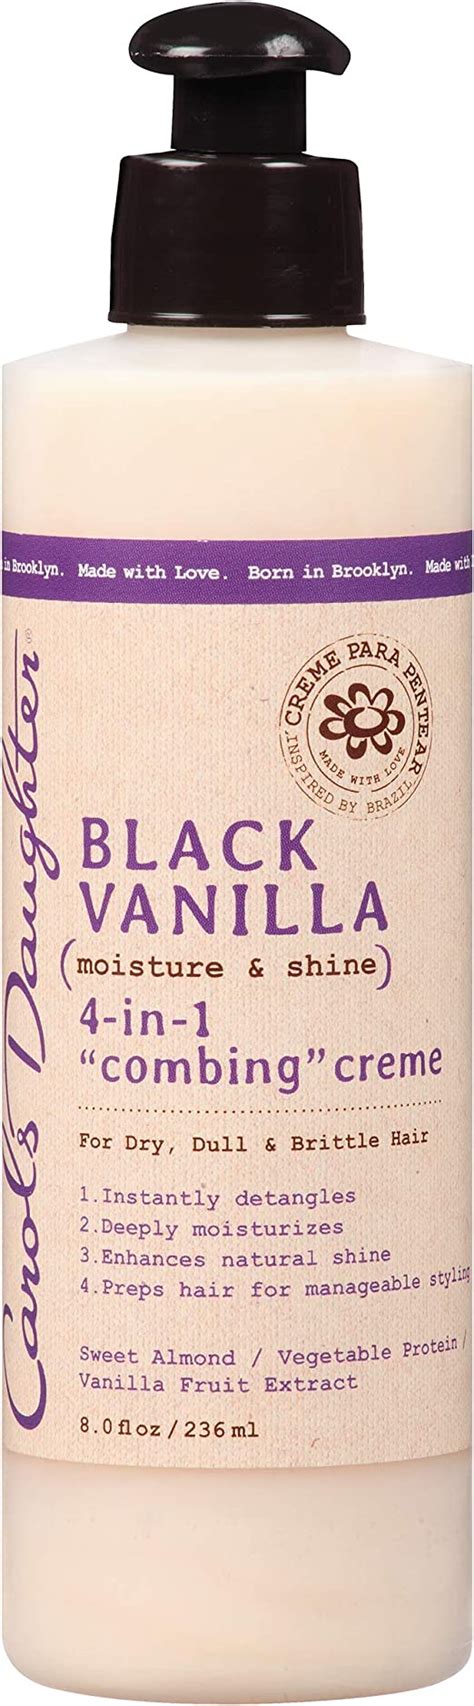 Carols Daughter Black Vanilla 4 In 1 Combing Crème 8 Fl Oz